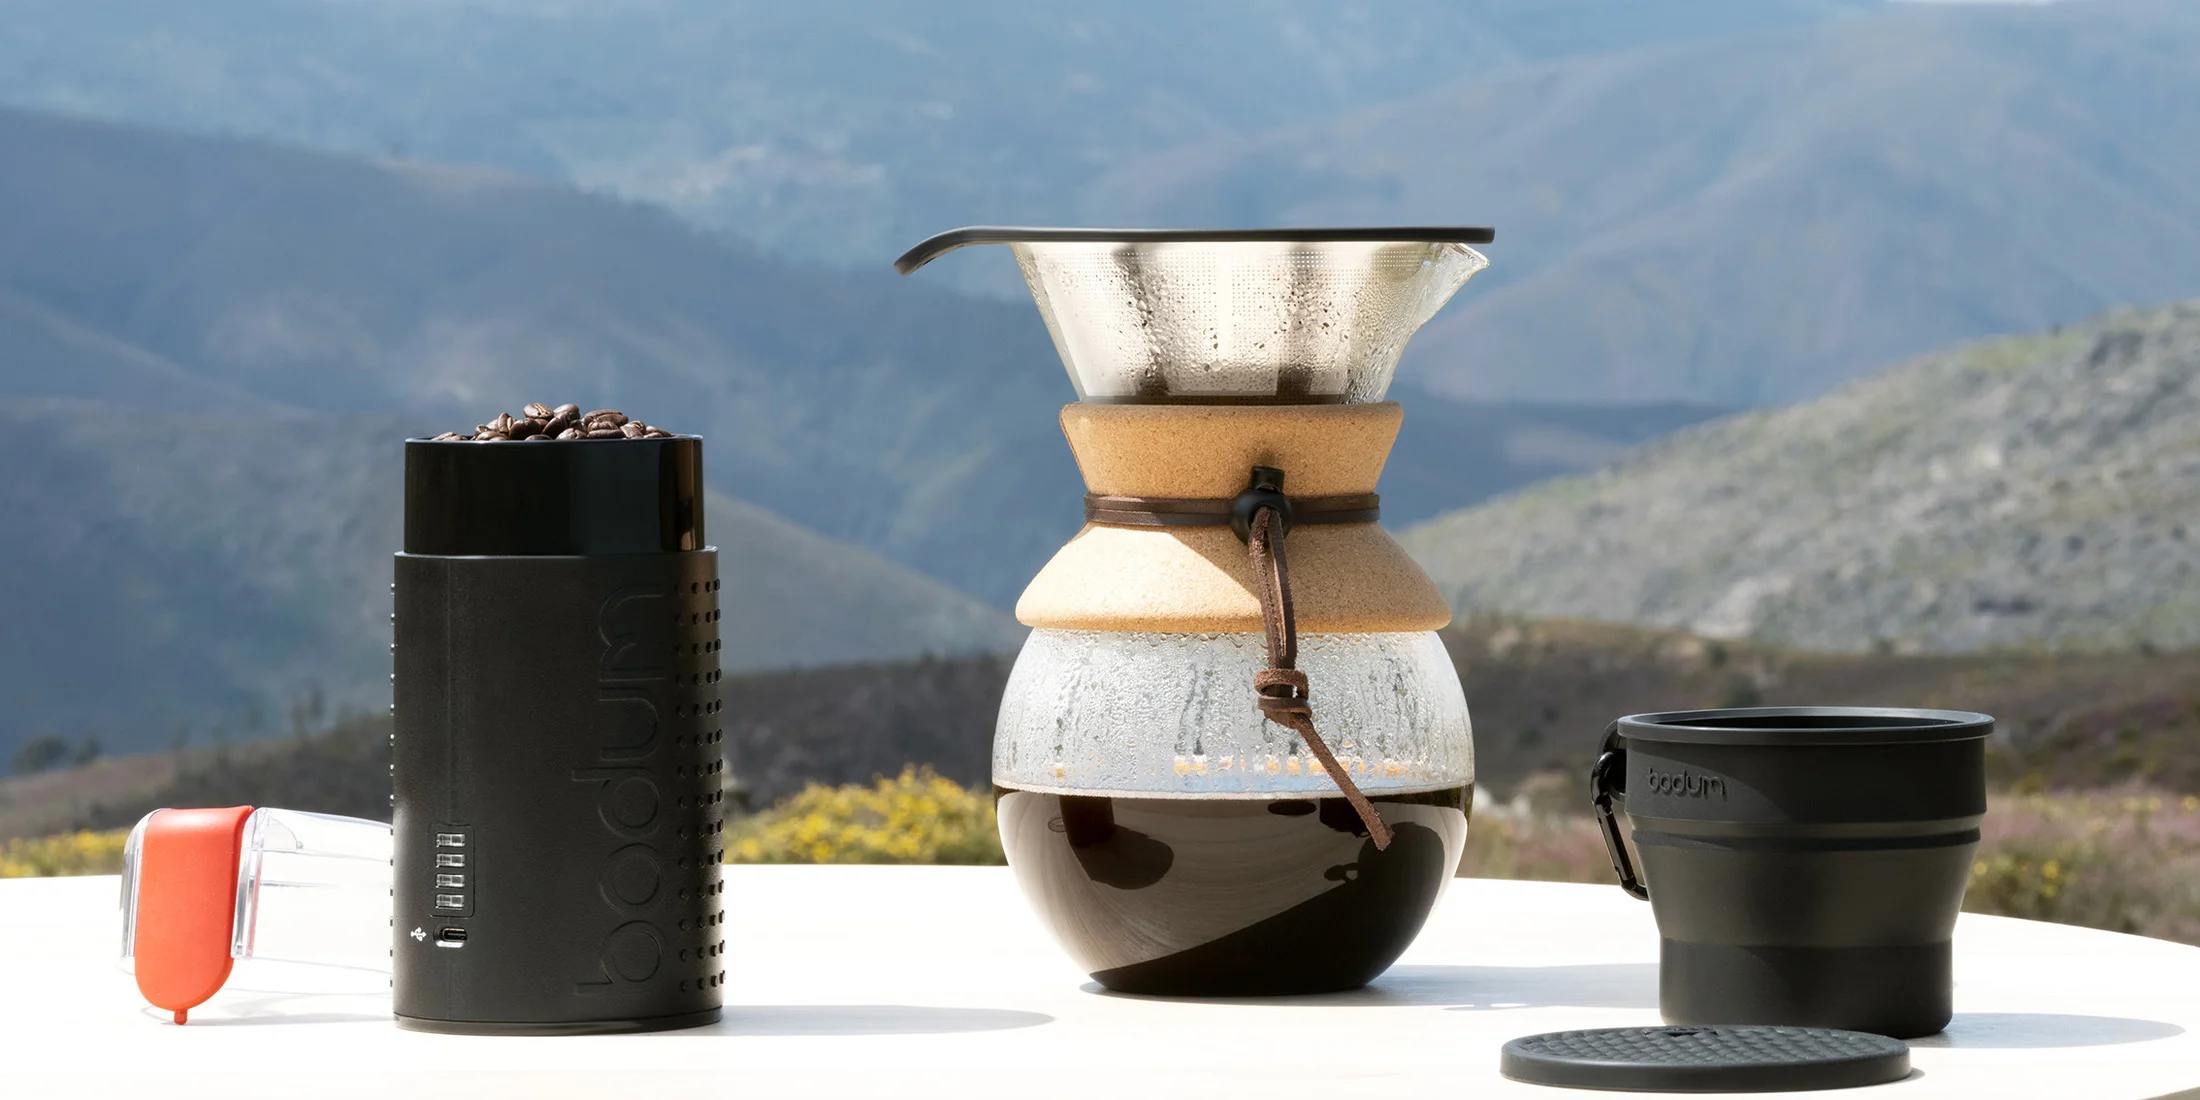 いつでもどこでも挽きたてのコーヒーが楽しめる！ 【ボダム】からコードレスのコーヒーグラインダー 『BISTRO 充電式ブレードコーヒーグラインダー』が発売【5名にプレゼント！】